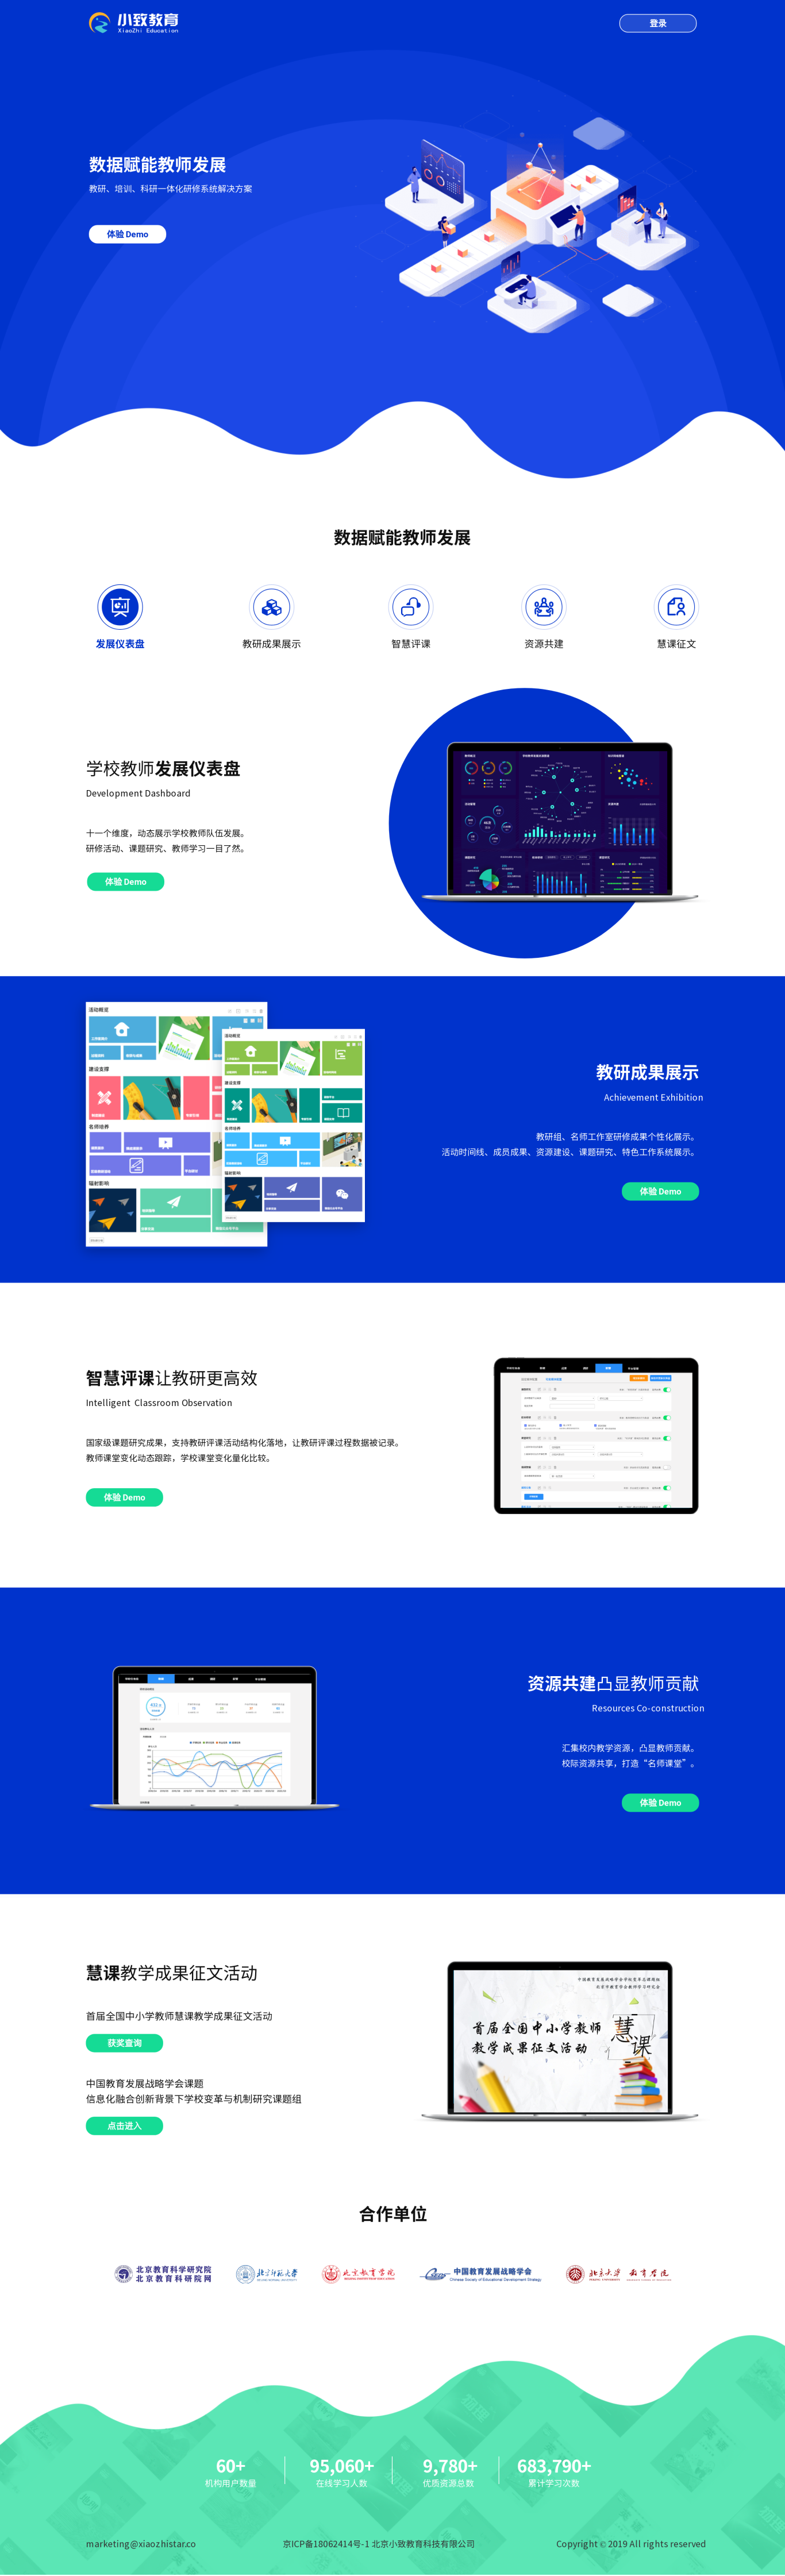 北京小致教育科技有限公司教育類網站設計（數據儀導盤，網站頁面）圖2